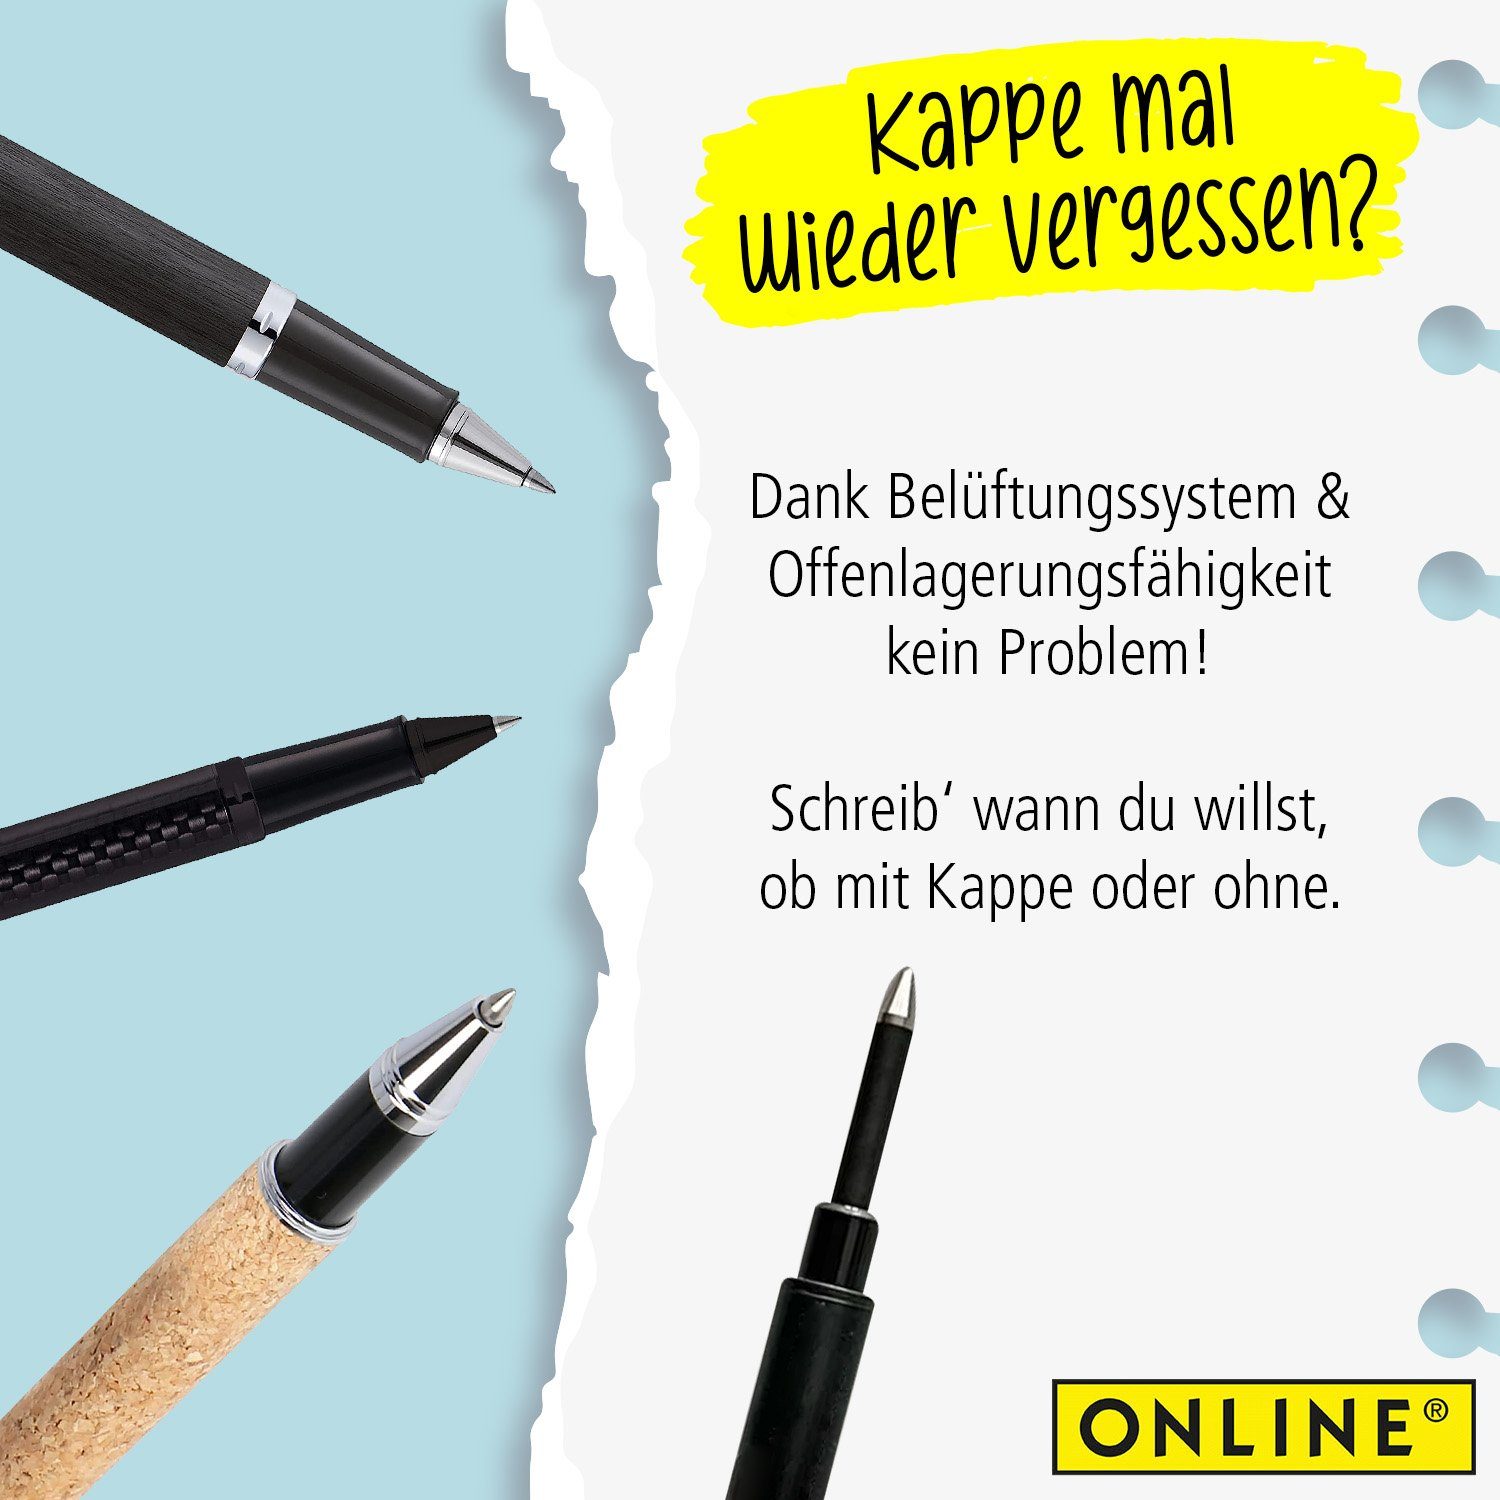 verschiedener Rollerball mit Pen kompatibel schwarz Tintenrollern Tintenroller Online Mine, Marken